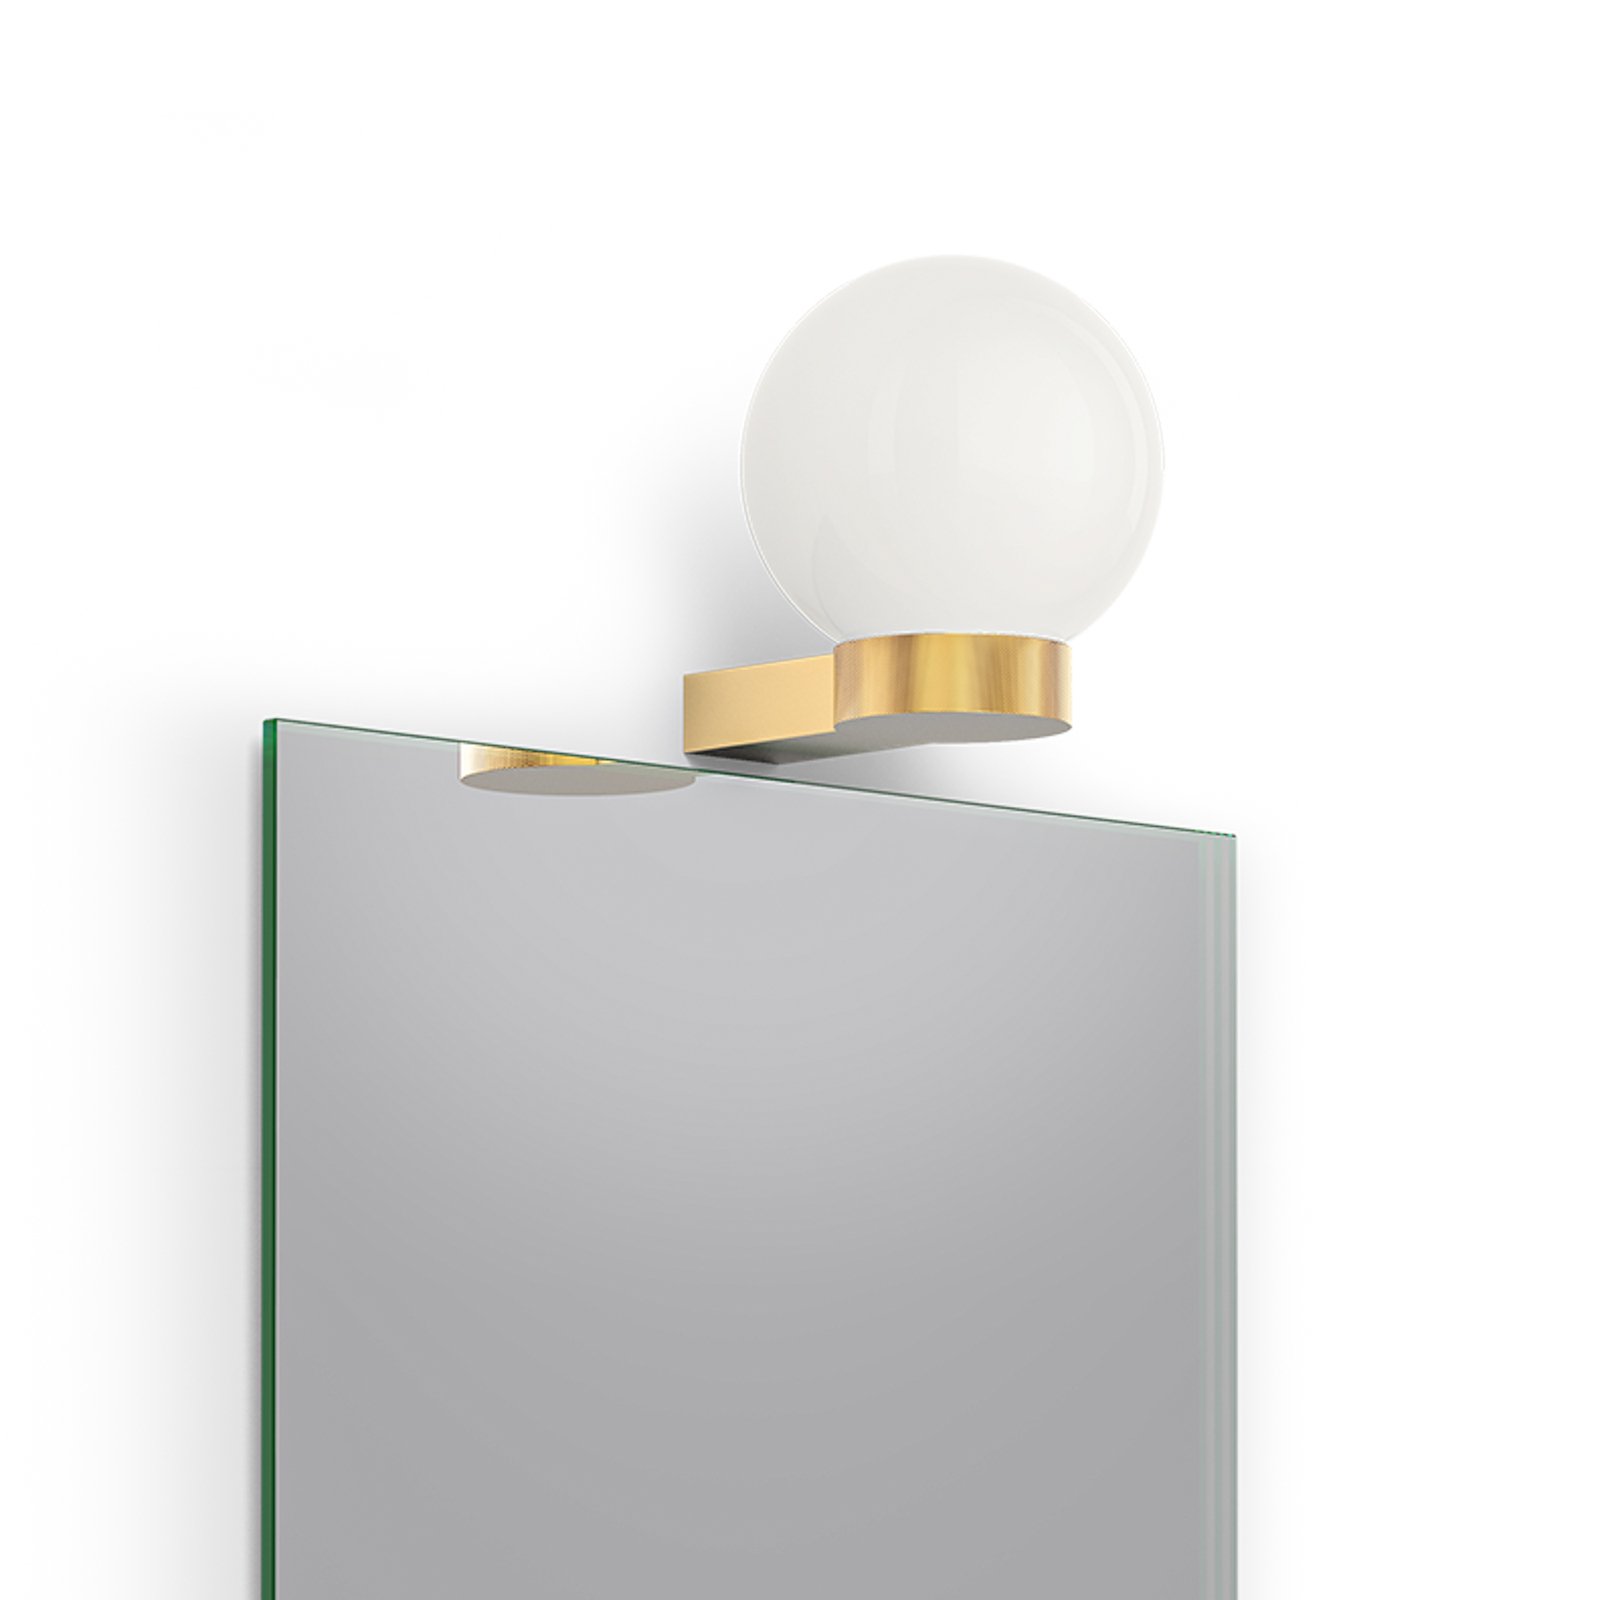 Decor Walther Club Light wandlamp, goud mat